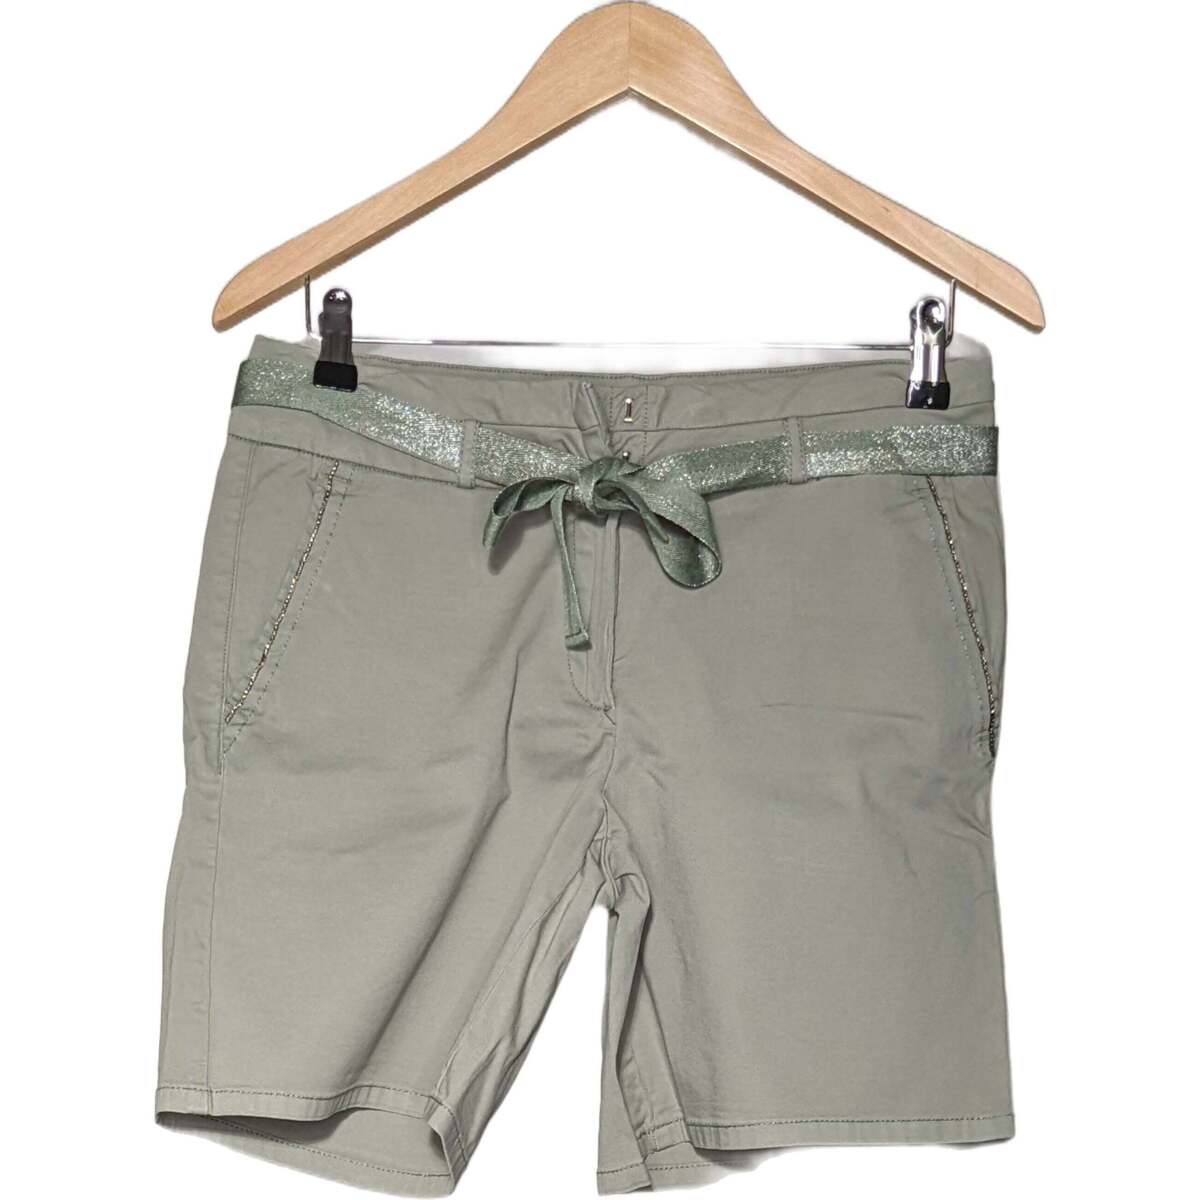 Vêtements Femme Shorts / Bermudas Breal short  40 - T3 - L Vert Vert